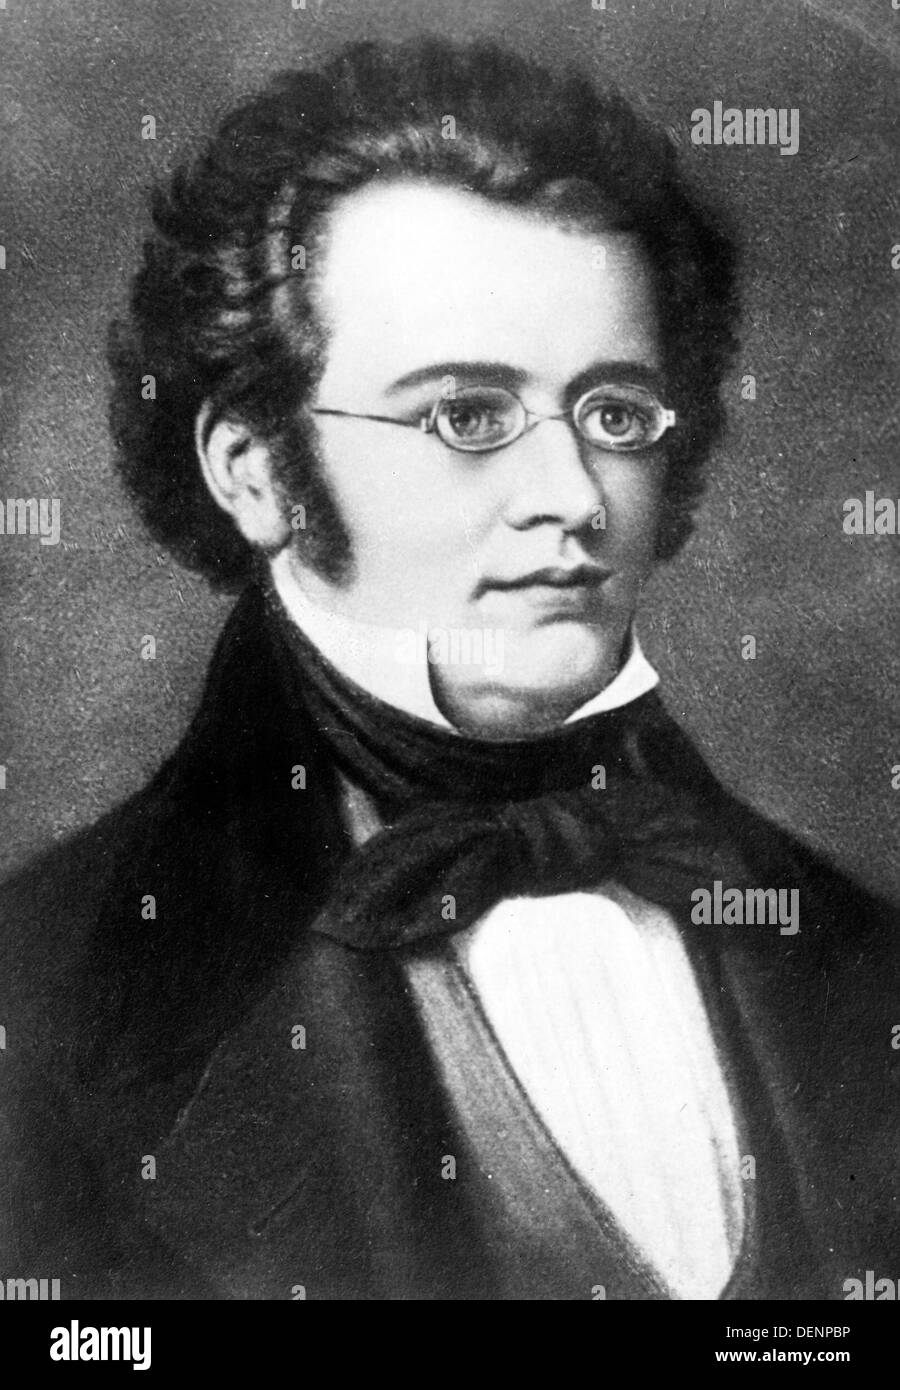 Franz Schubert, Austrian composer Stock Photo